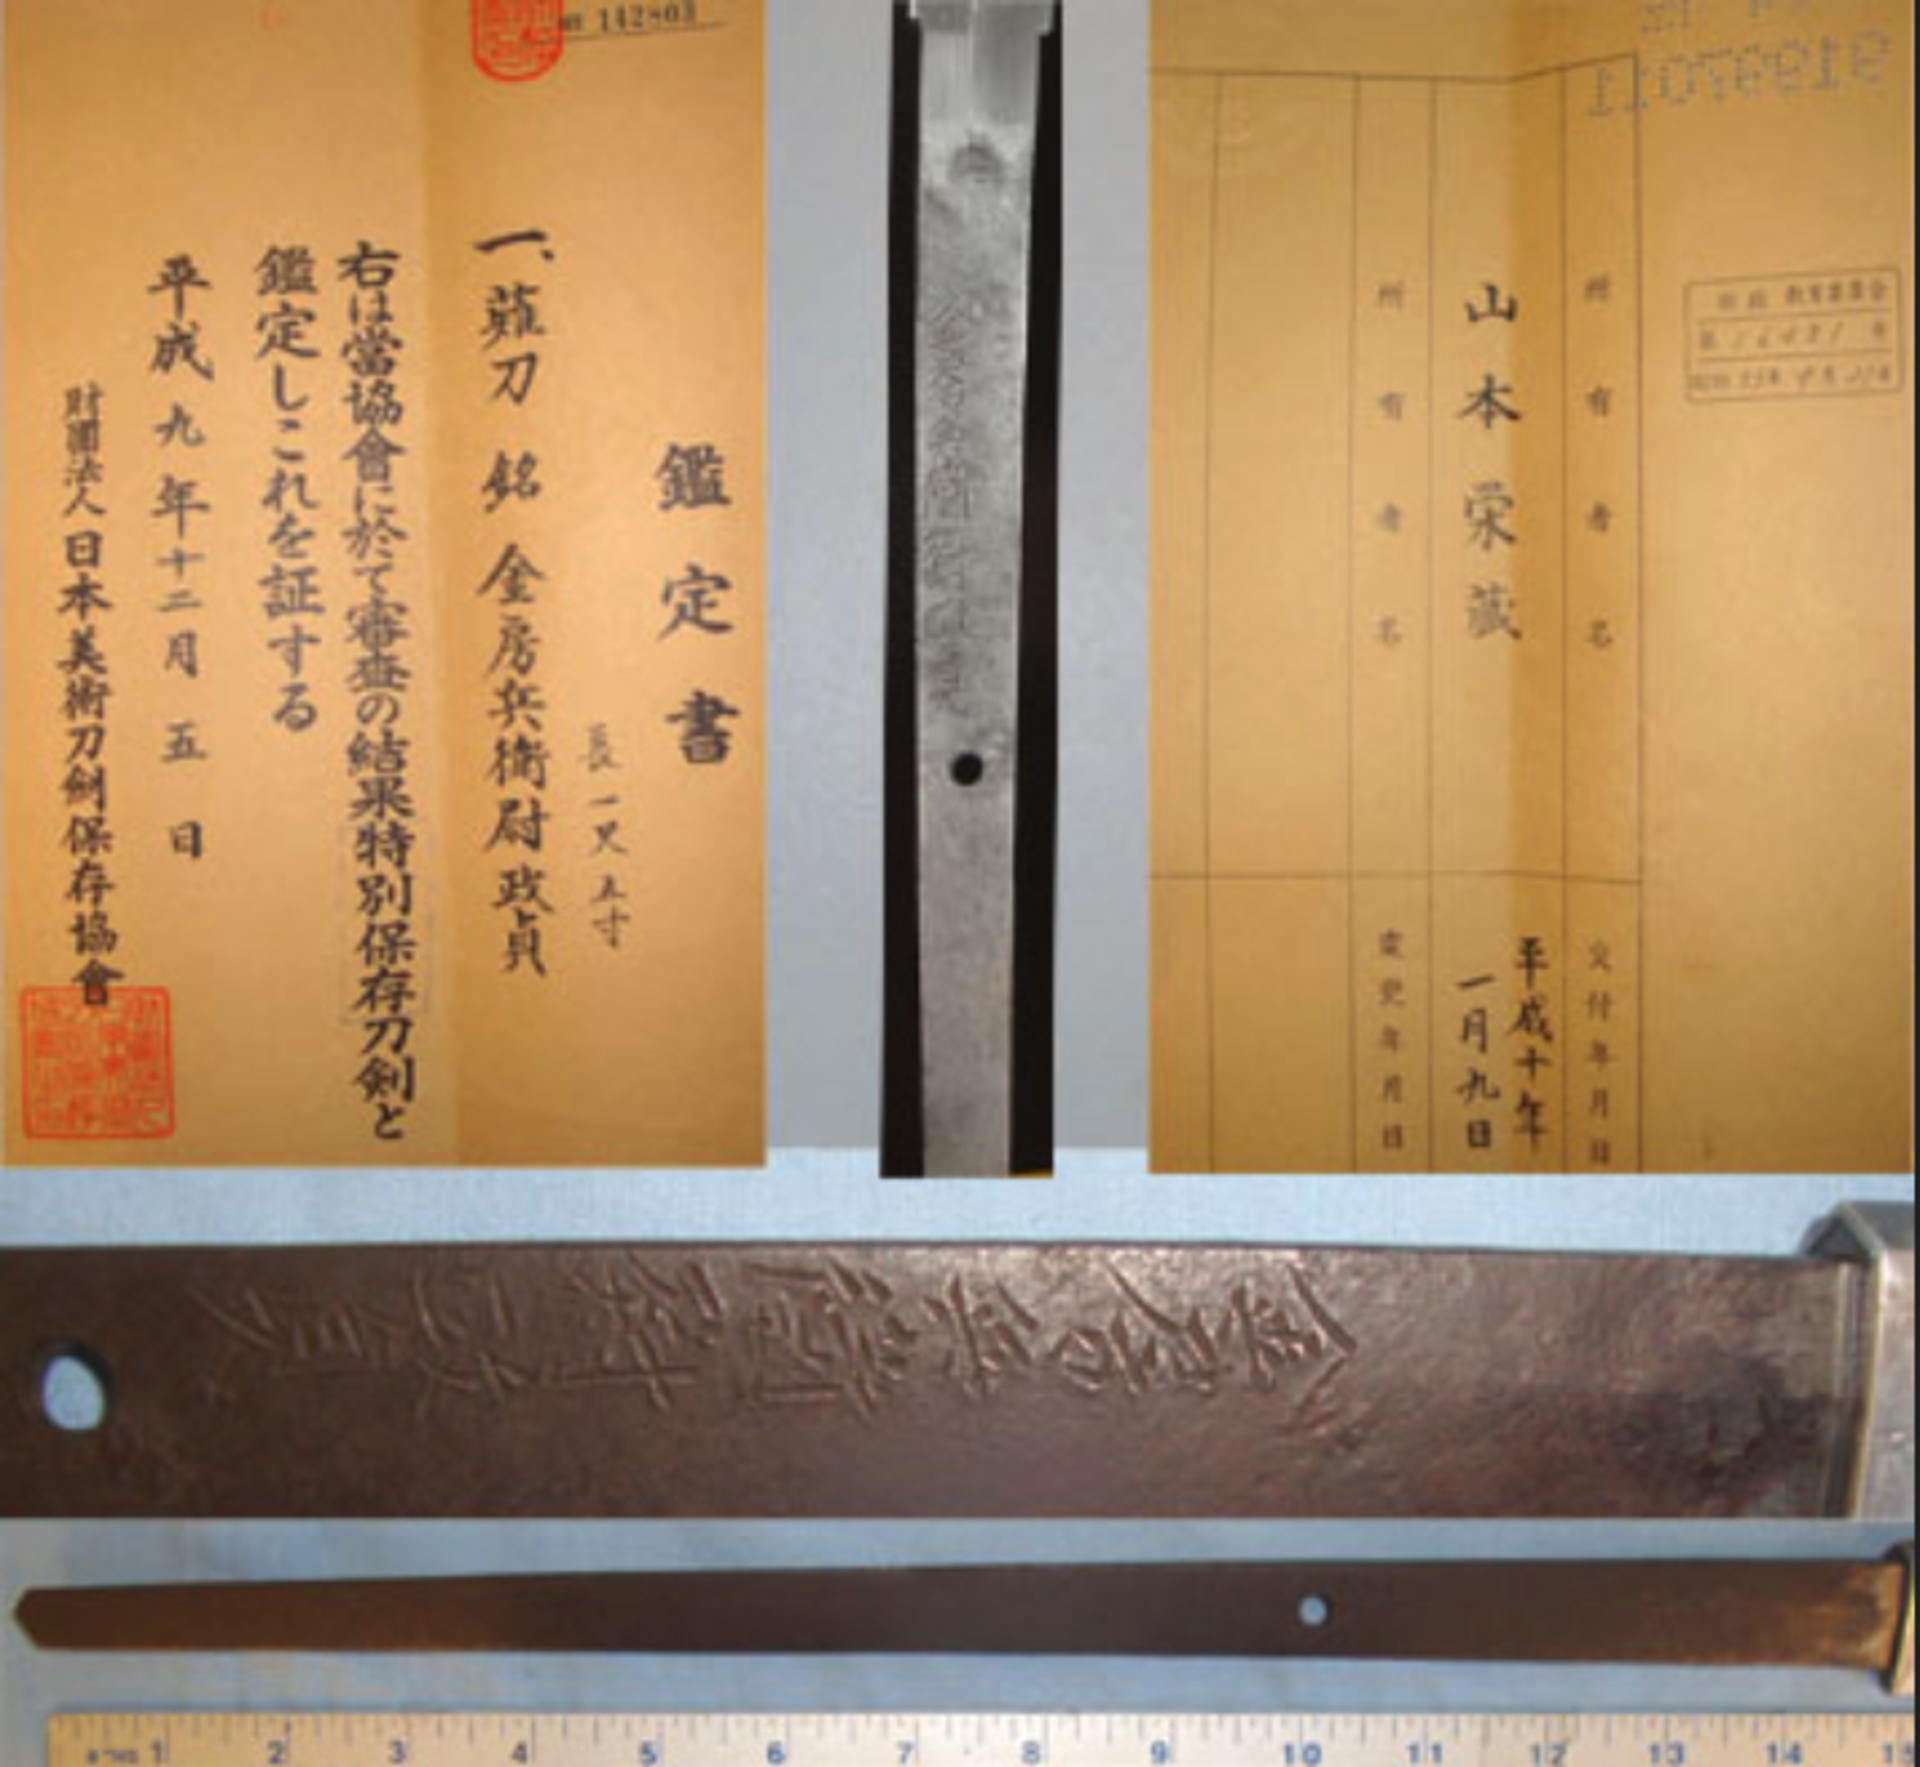 ANCIENT 1558 - 1570 Japanese Naginata Pole Arm Blade With Signed Tang ‘Kanabo Masa Sada - Image 2 of 3